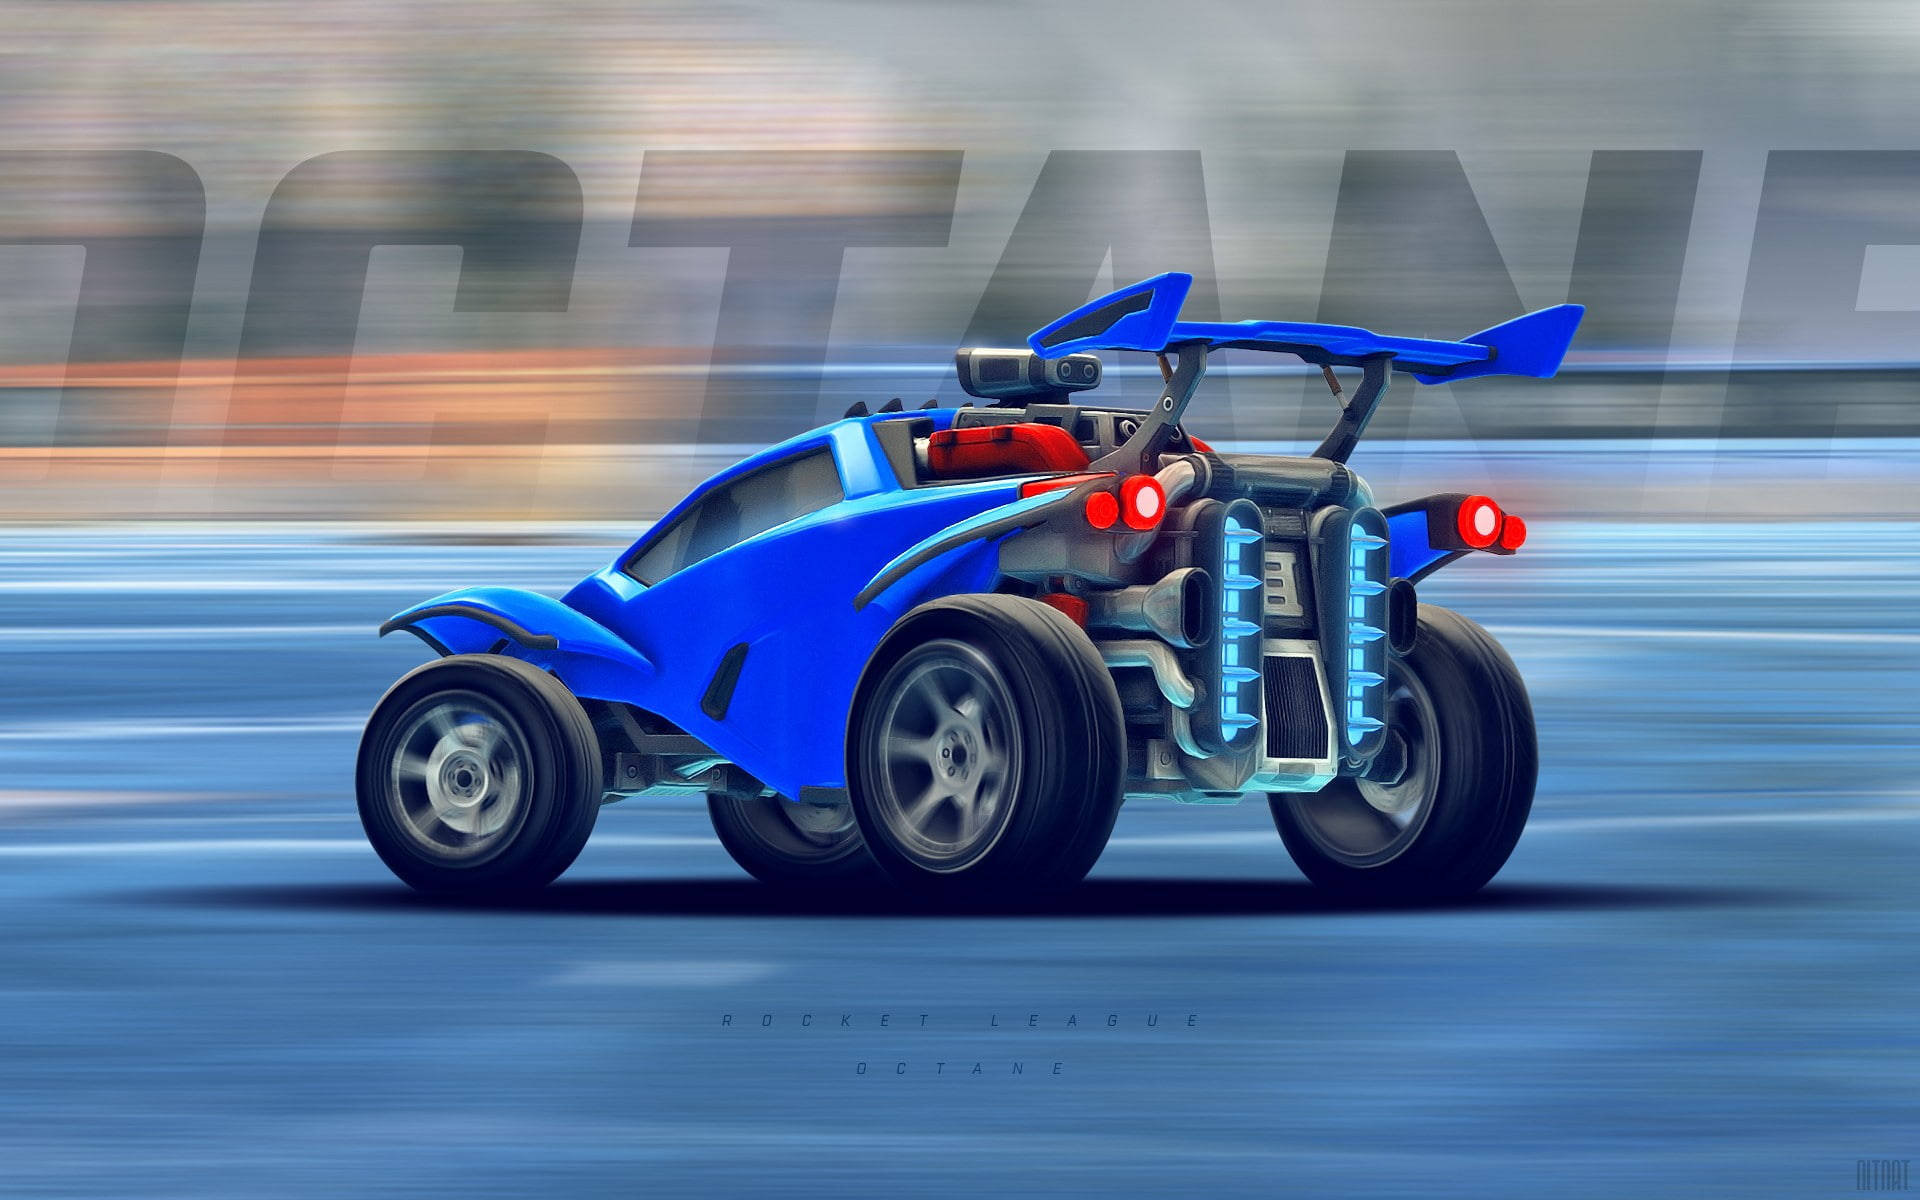 Cool Rocket League Blue Octane Battle Car Background